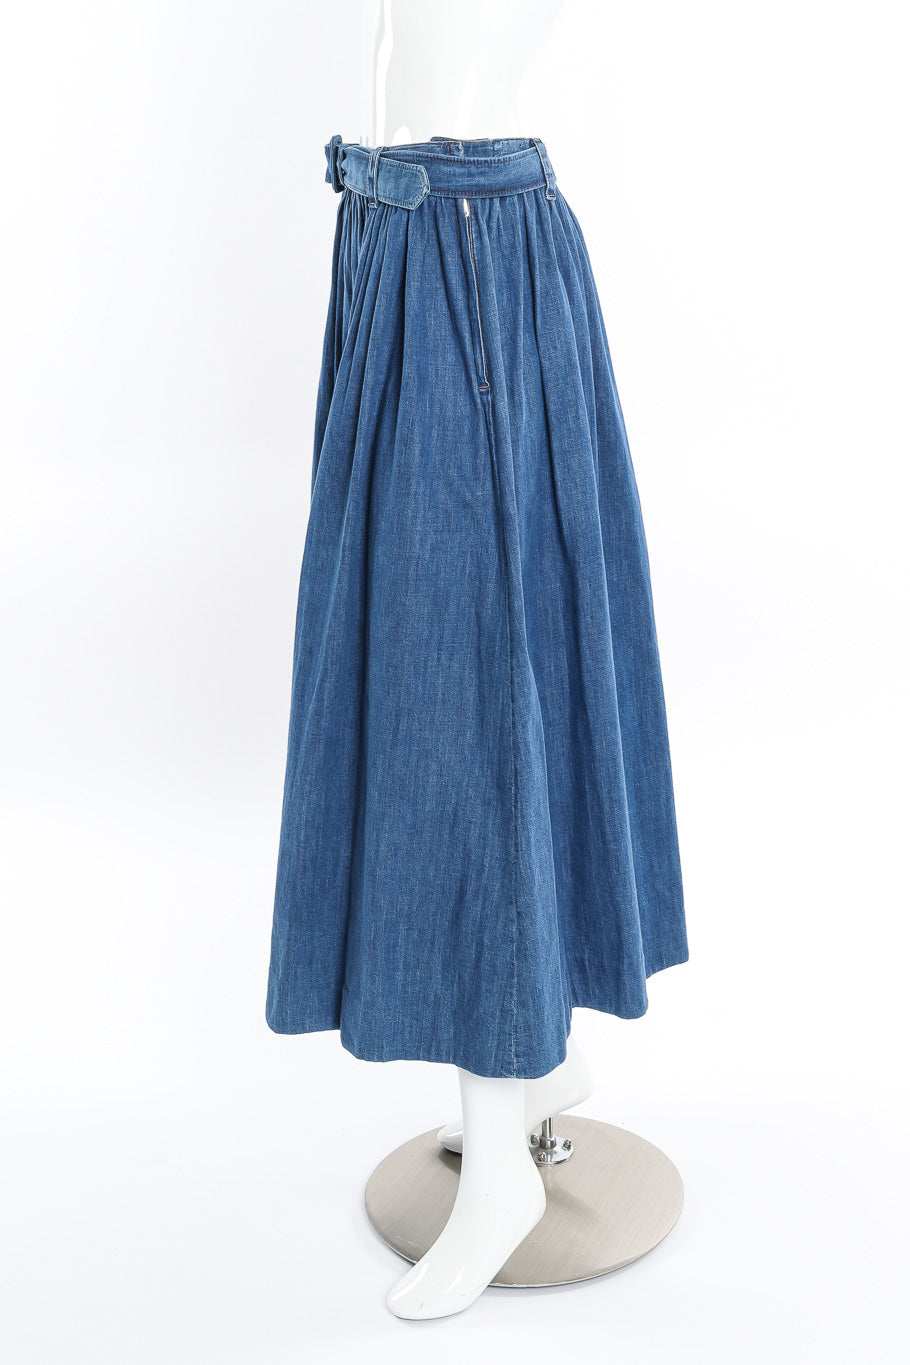 Prada denim peasant skirt on mannequin @recessla